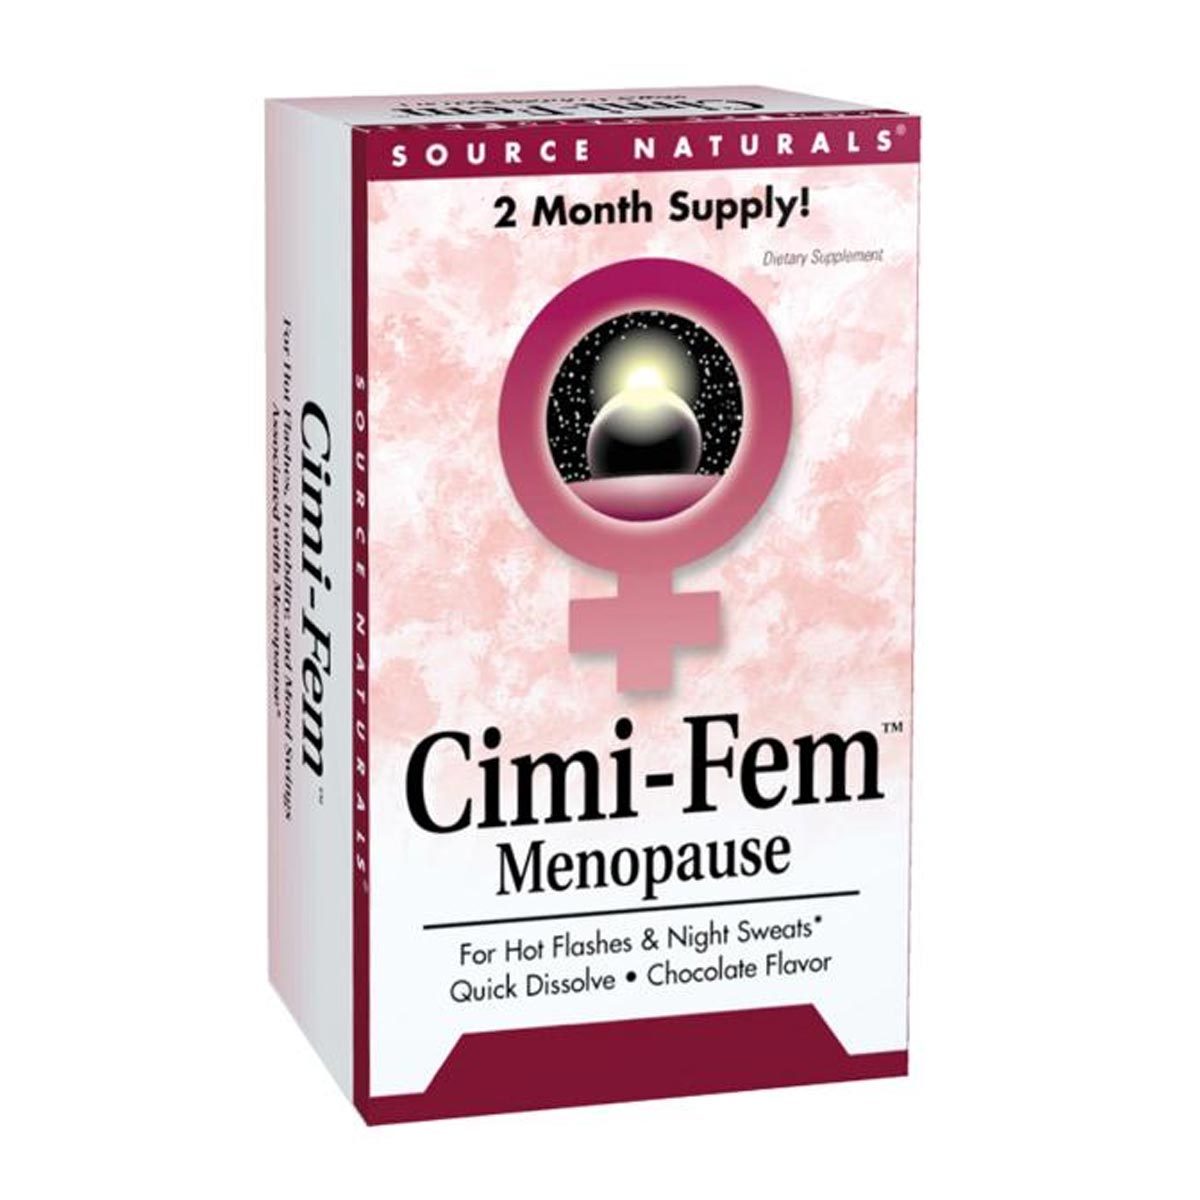 Primary image of Cimi-Fem